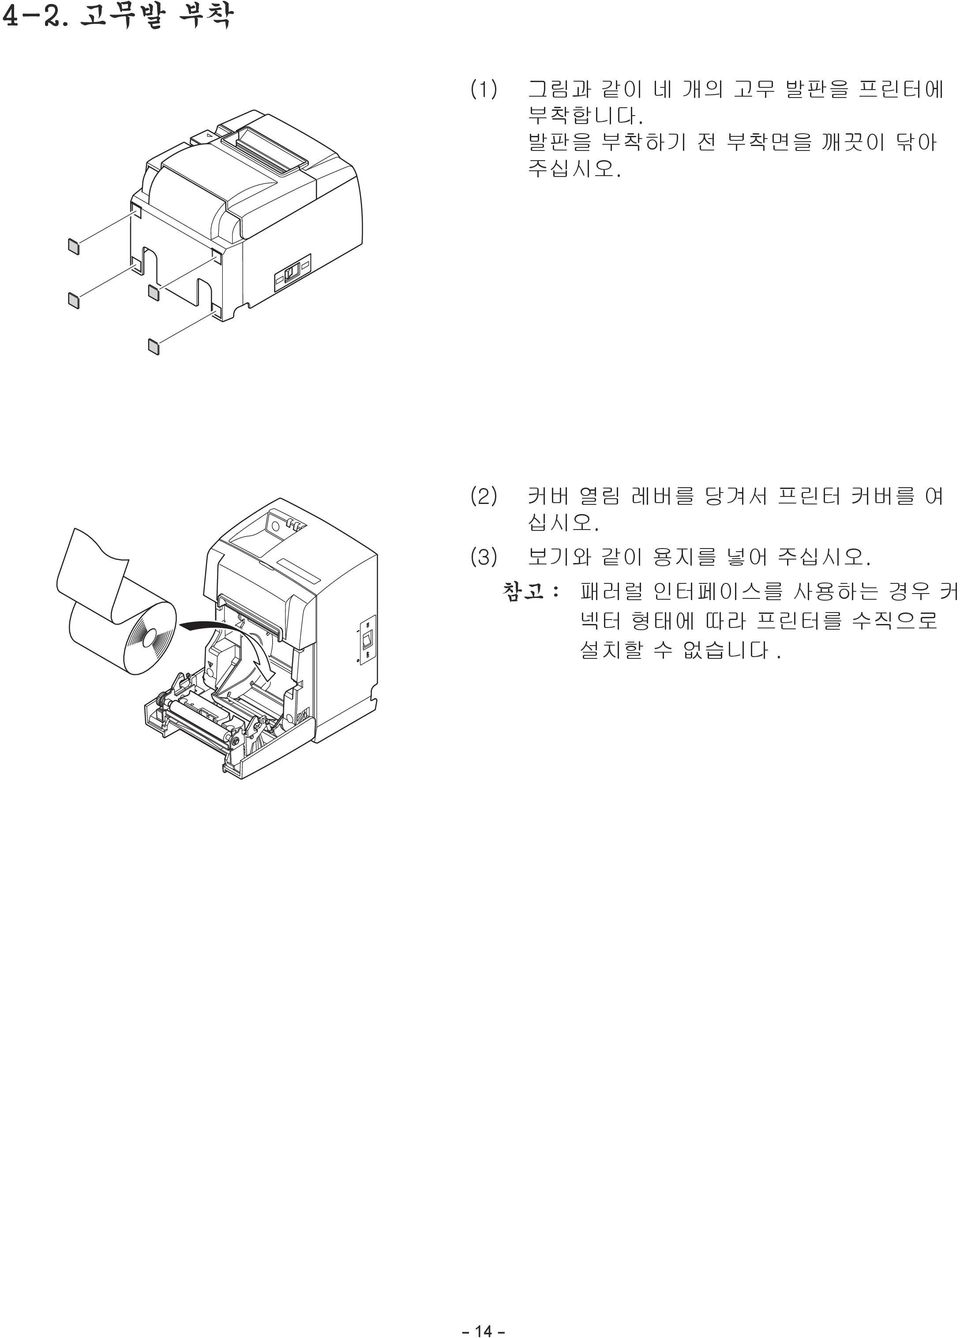 (2) 커버 열림 레버를 당겨서 프린터 커버를 여 십시오.